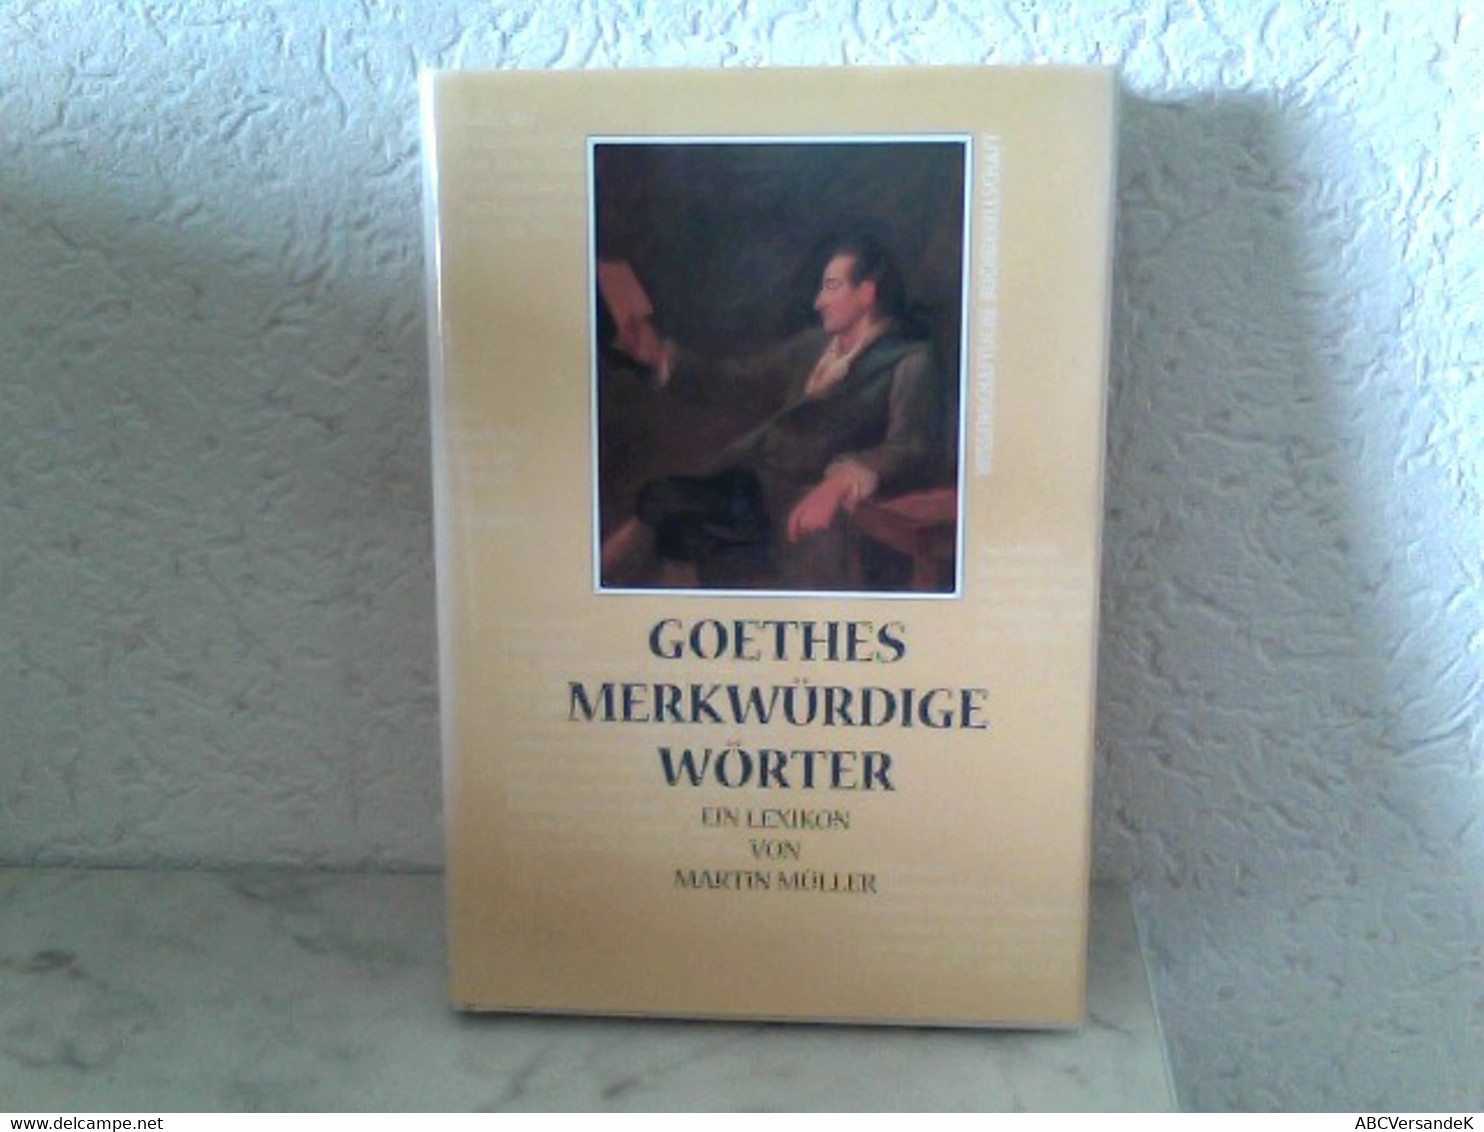 Goethes Merkwürdige Wörter - Ein Lexikon - Lexika